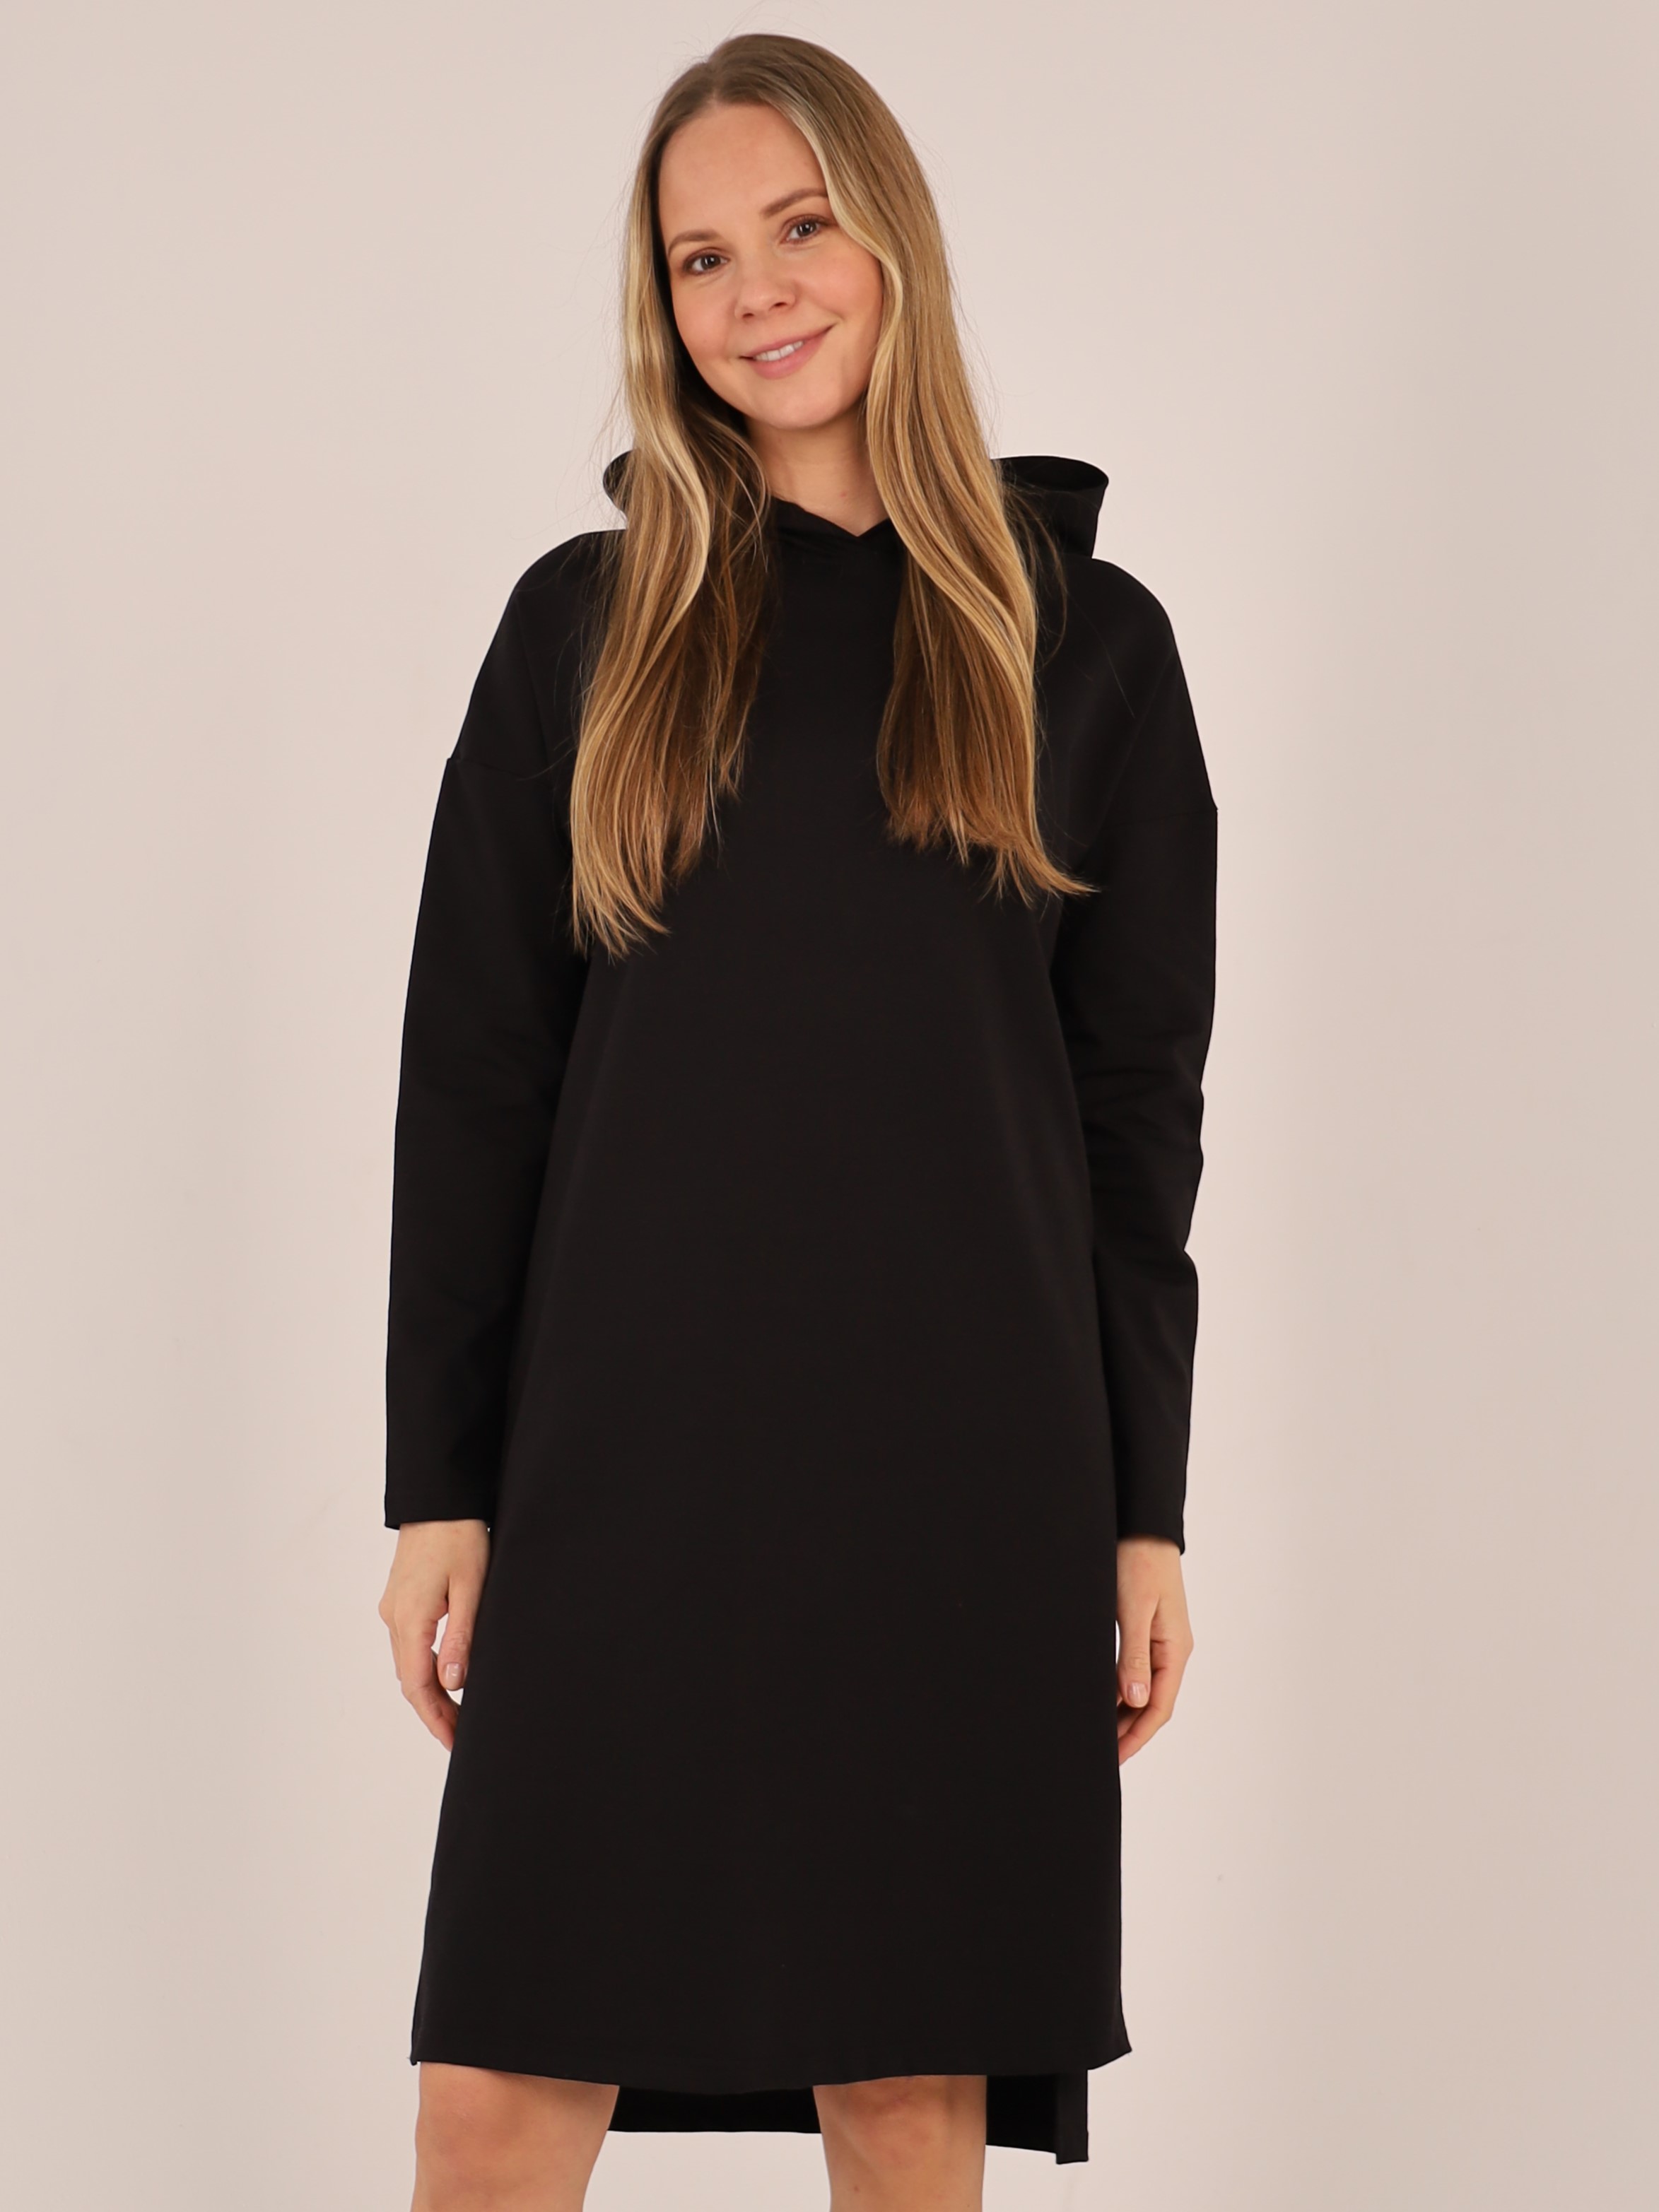 Платье женское с капюшоном черное арт. 100124